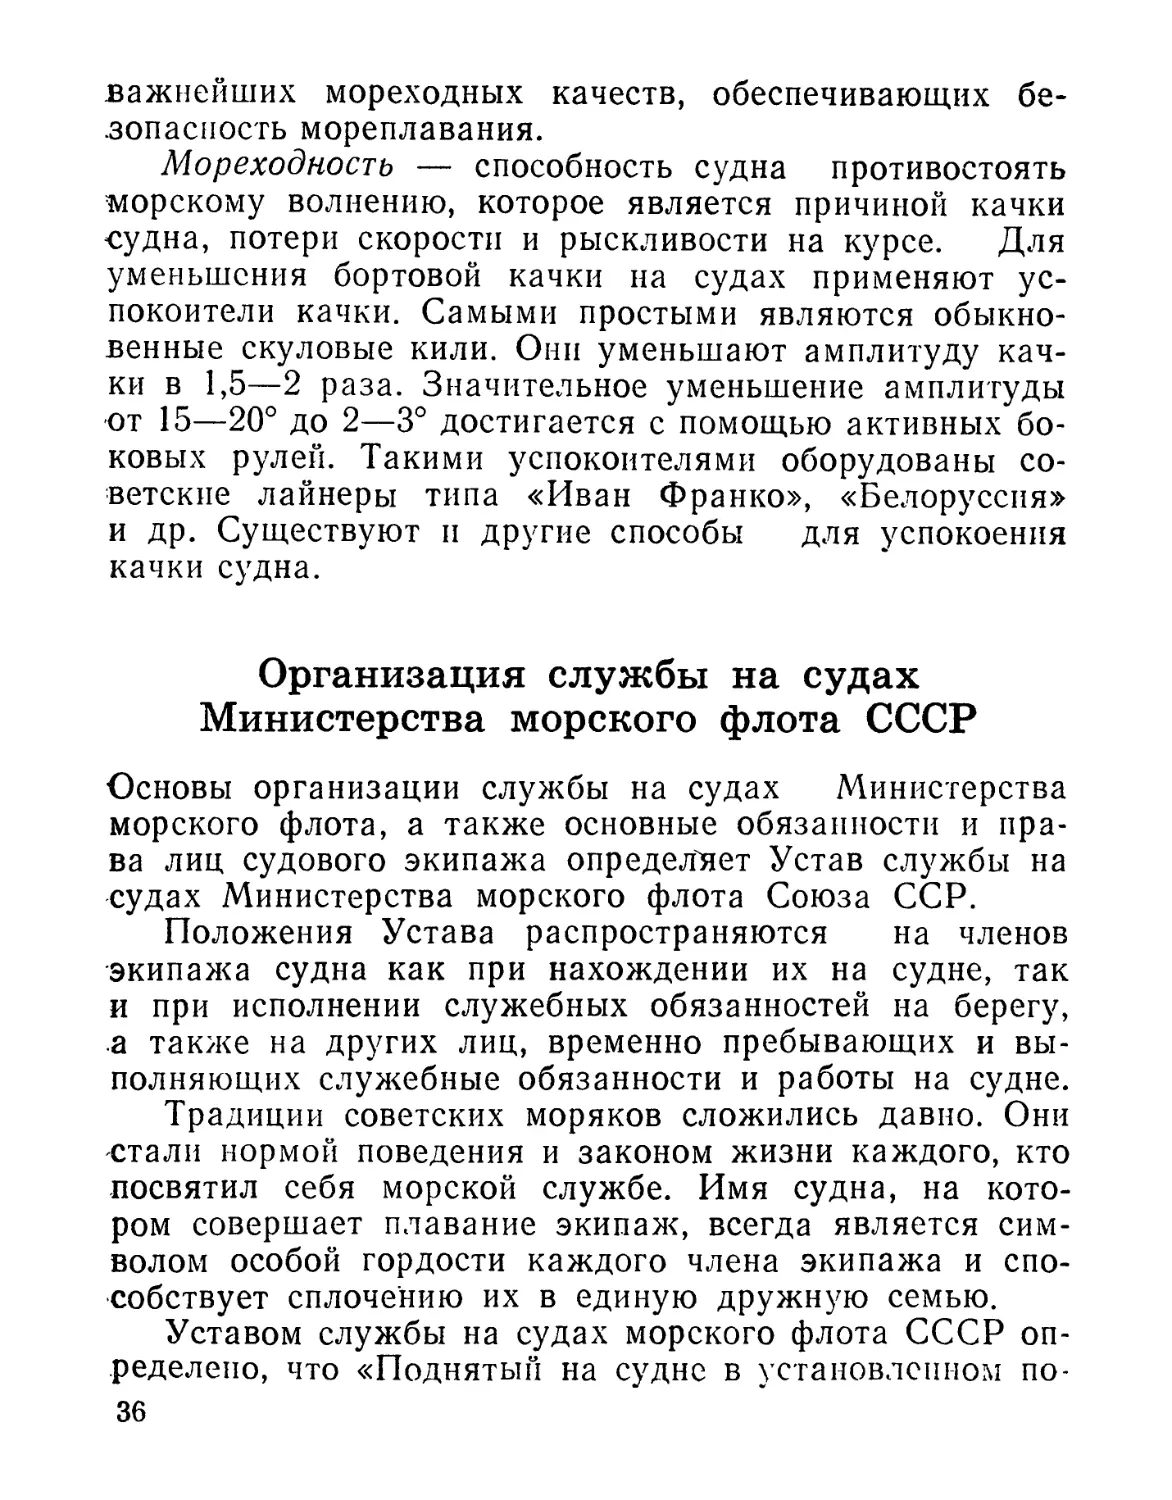 Организация службы на судах Министерства мopcкoгo флота СССР